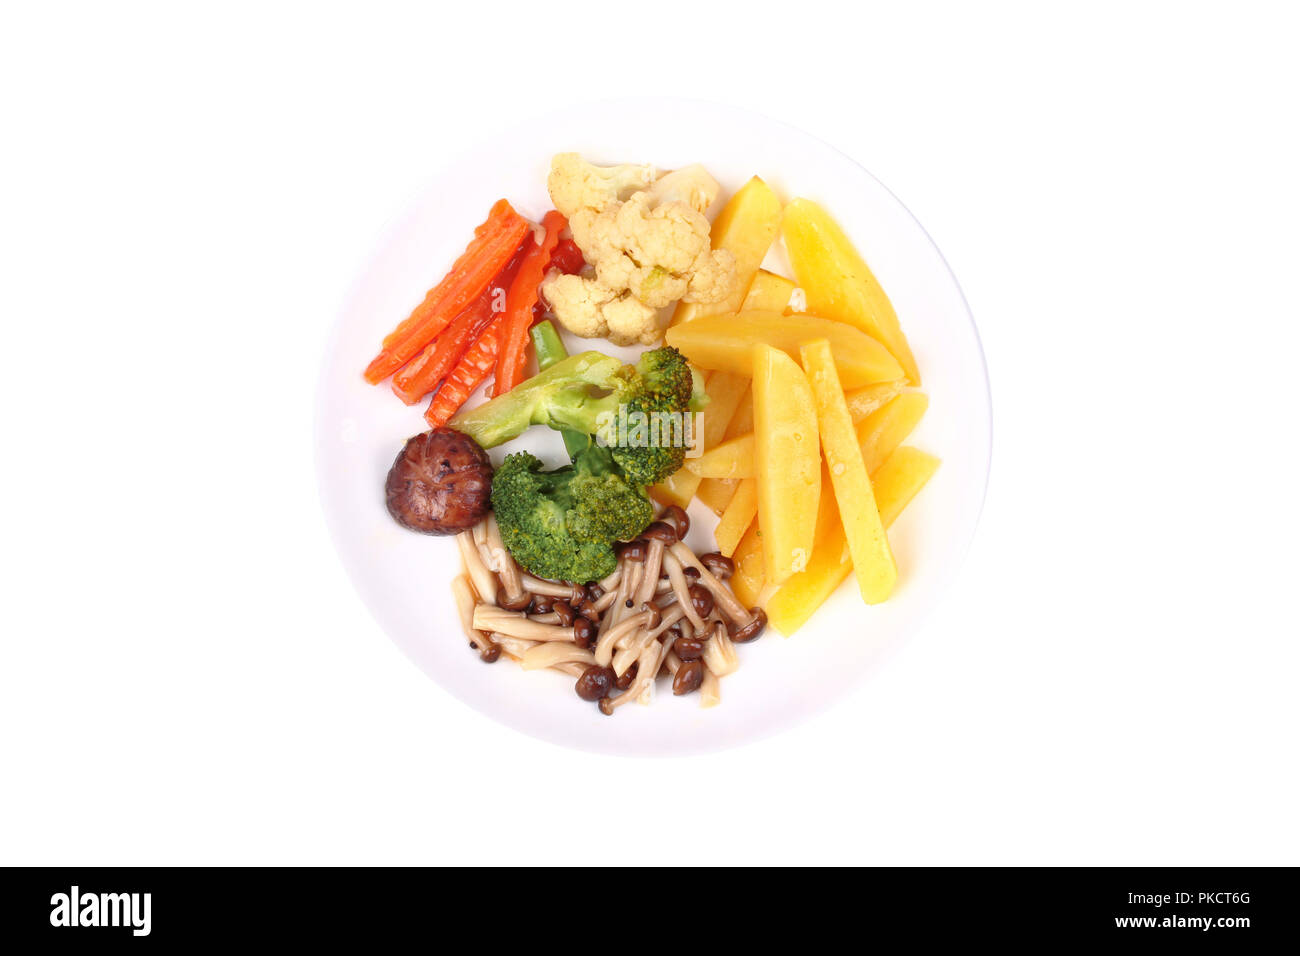 Der gebratenen Isoliert in Scheiben geschnittene Kartoffel- und Shimeji Pilz mit gemischtem Gemüse. Kein Fleisch Rezept. Stockfoto